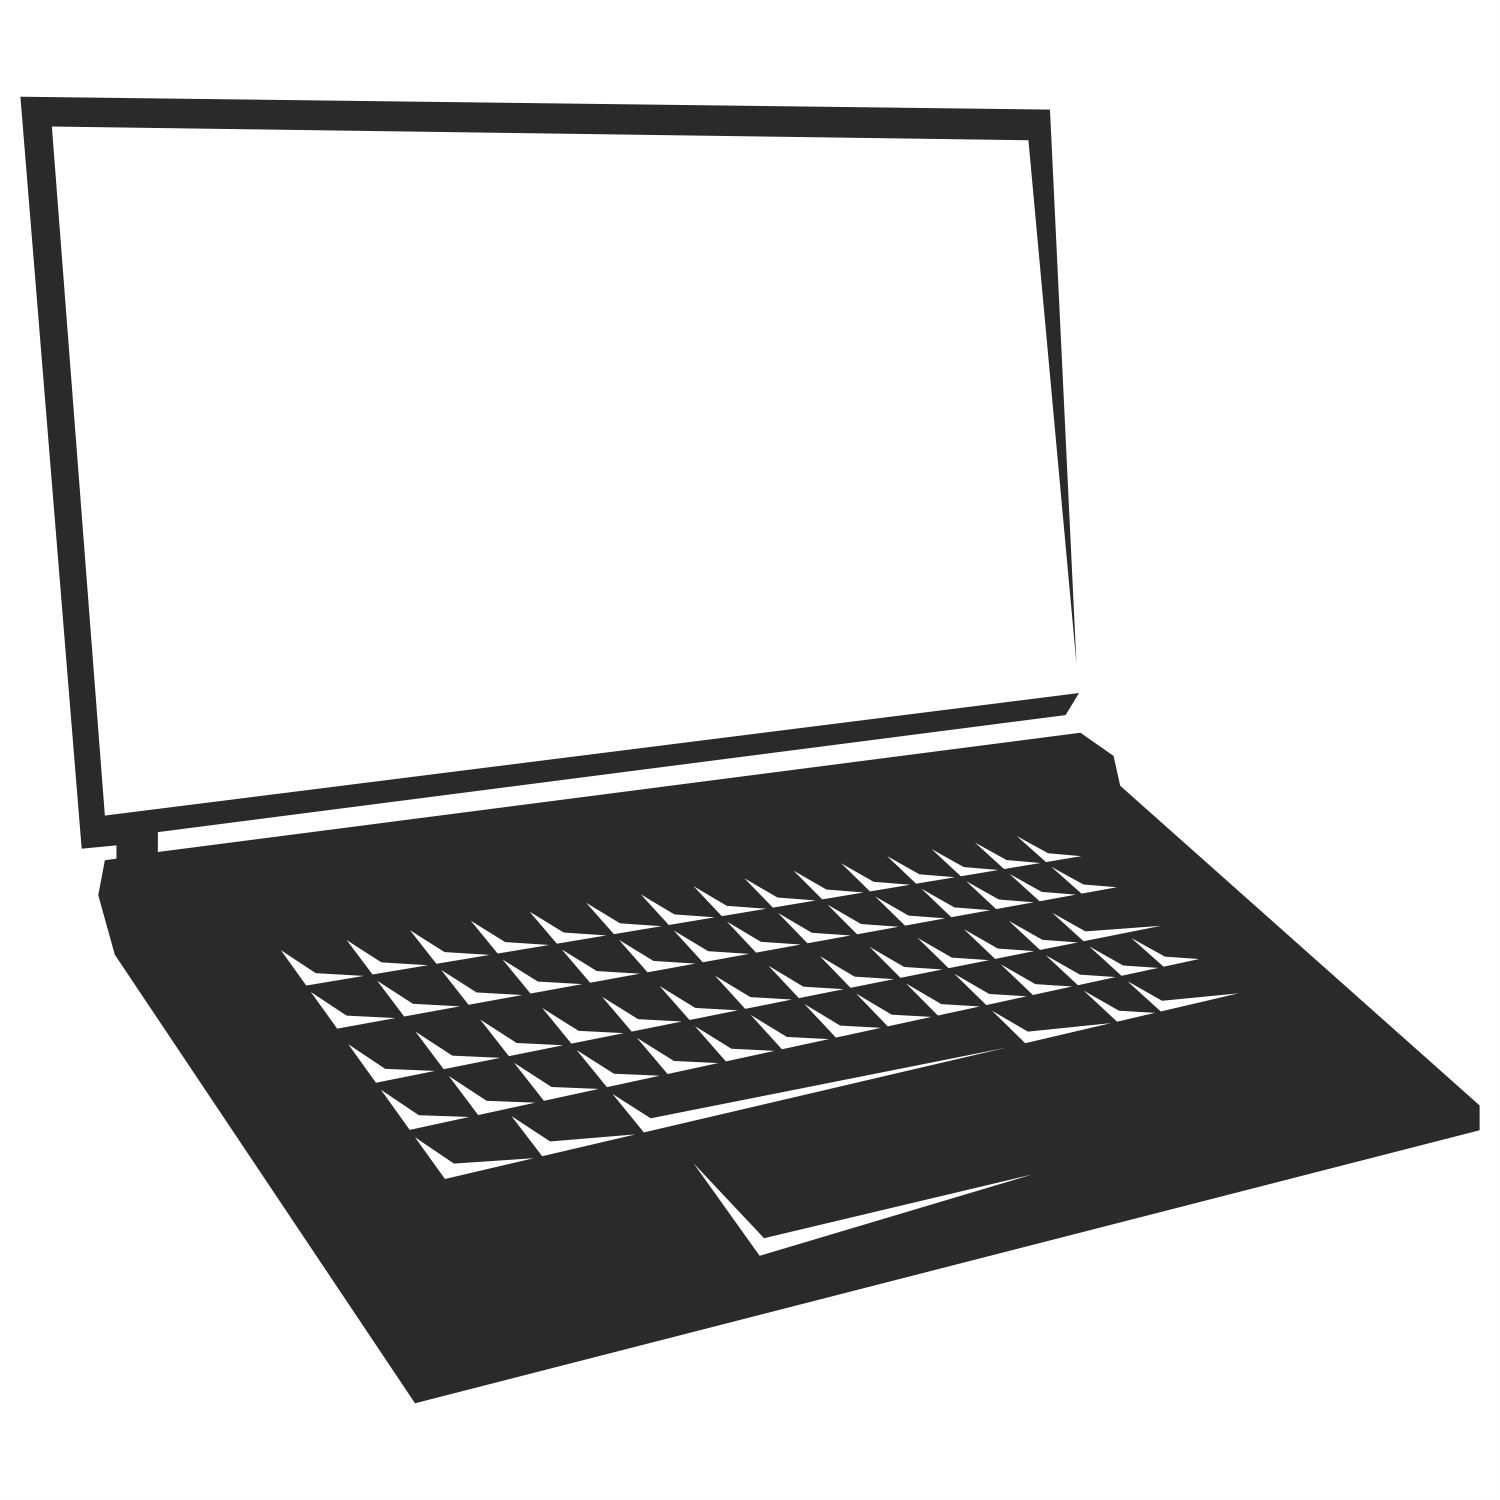 Laptop Vector - ClipArt Best